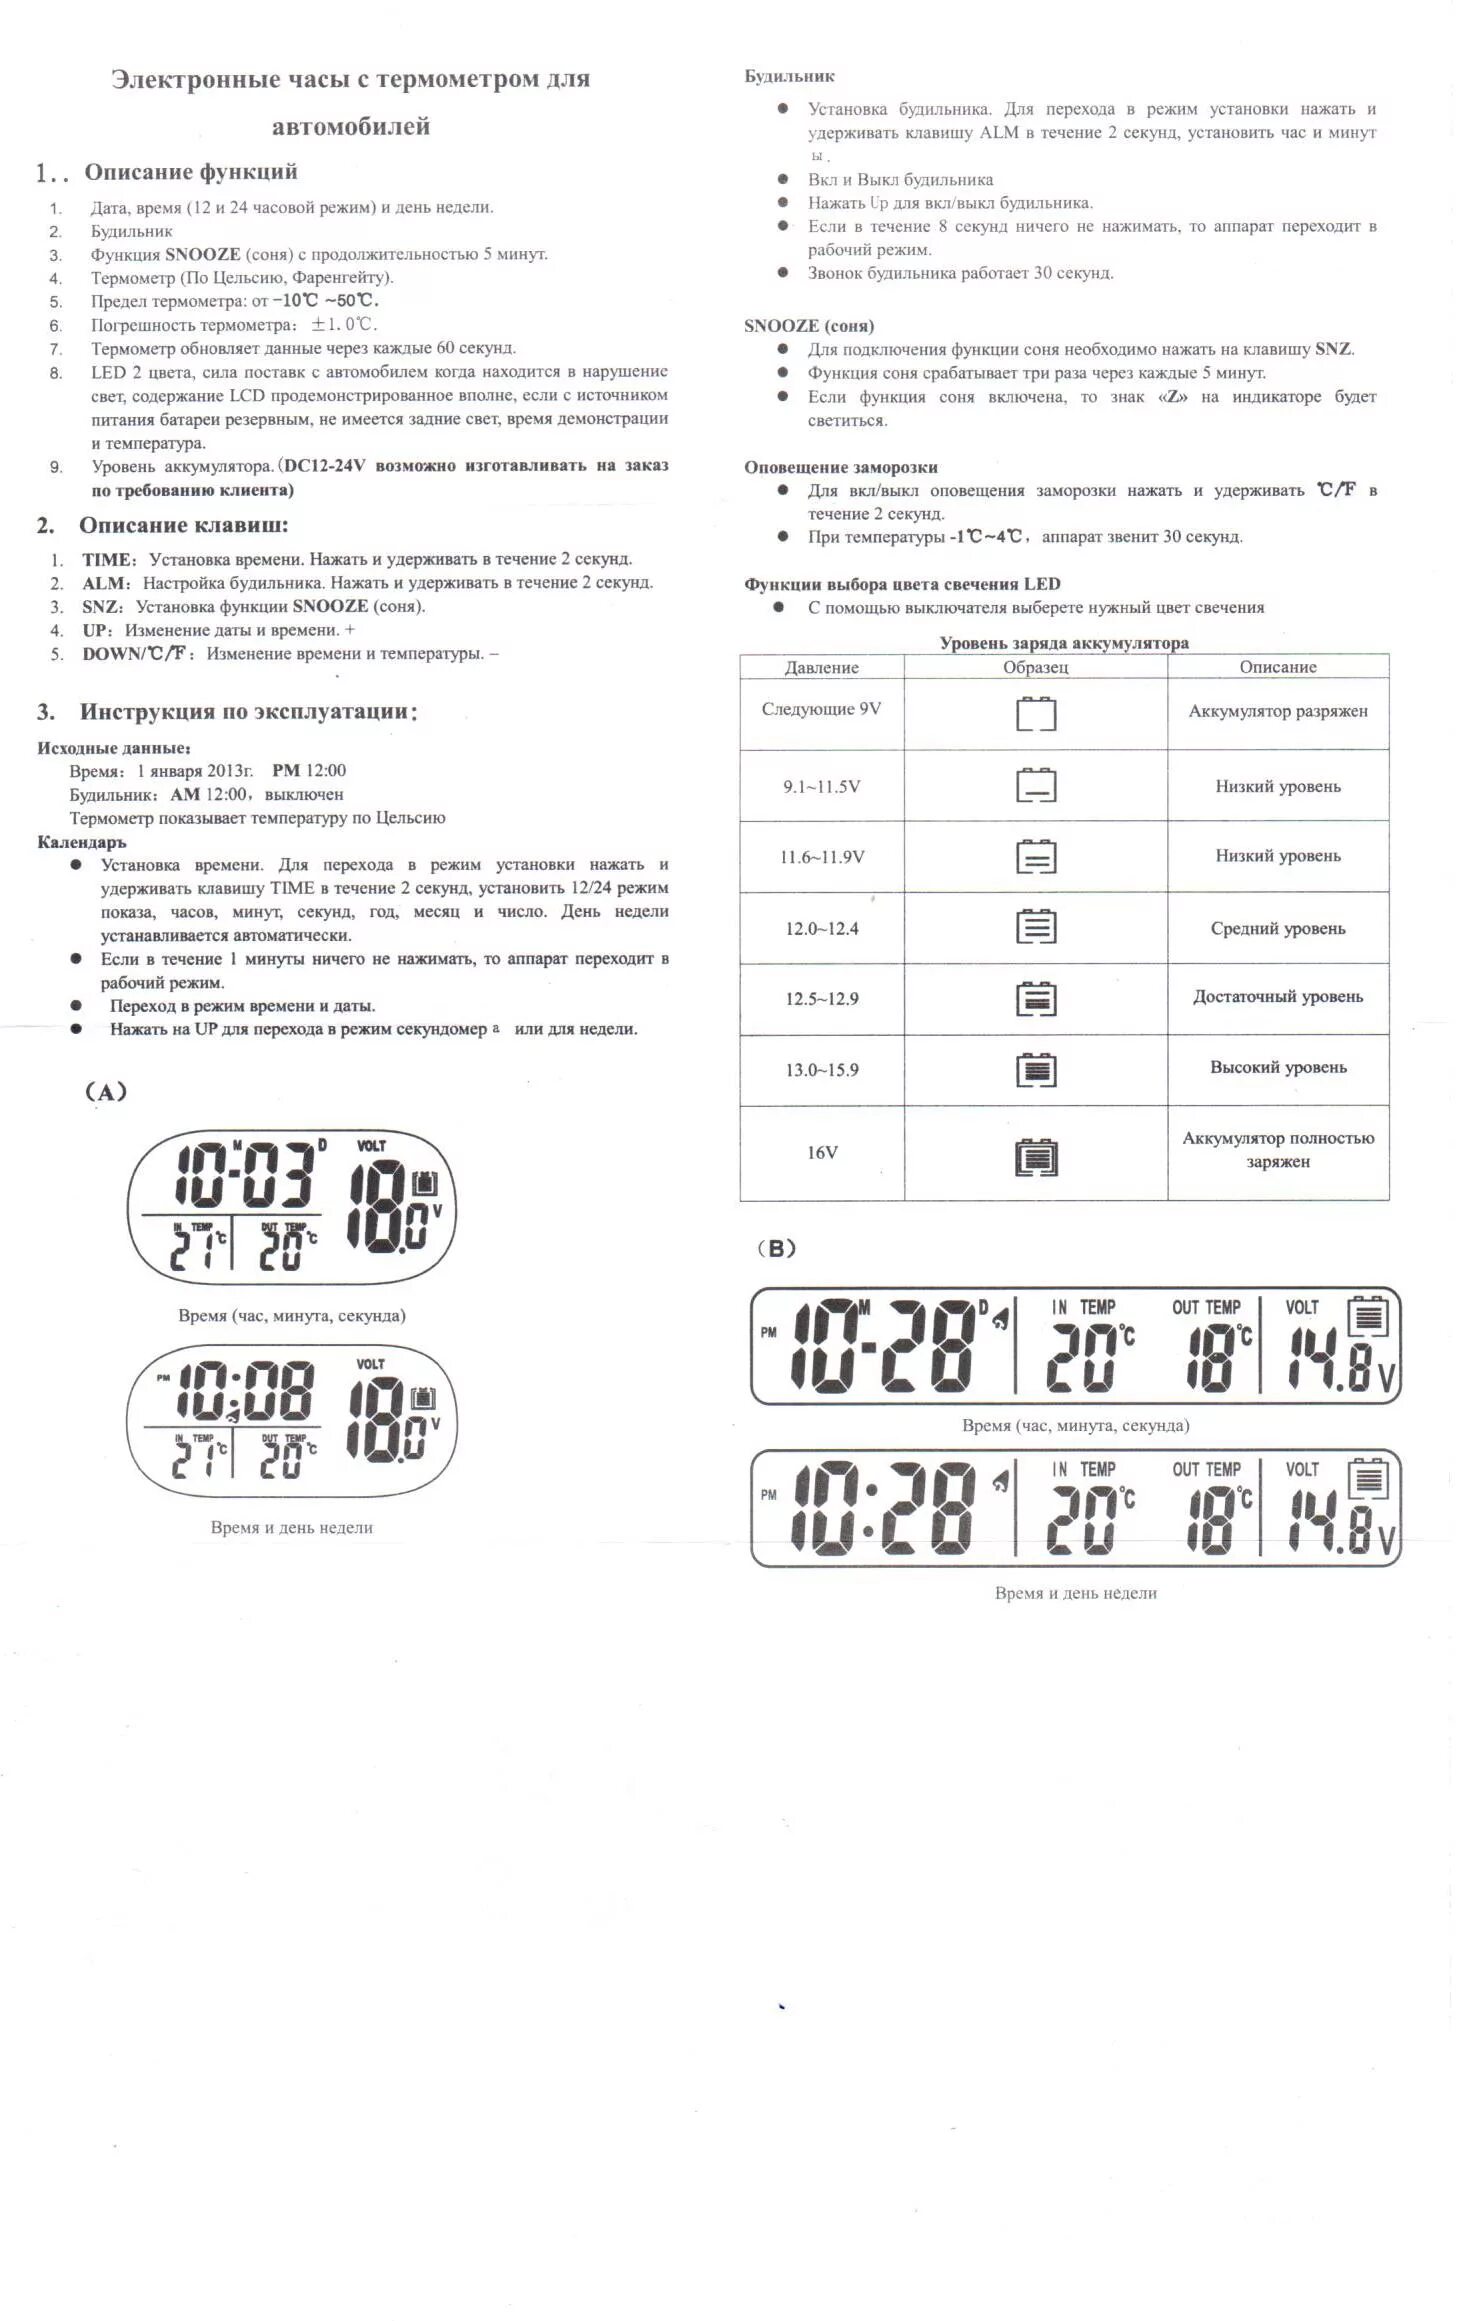 Как настроить часы 6507. Электронные часы VST-7050. Электронные часы VST 729 инструкция. Инструкция по эксплуатации электронных часов VST-763w. Инструкция электронных часов VST 719.